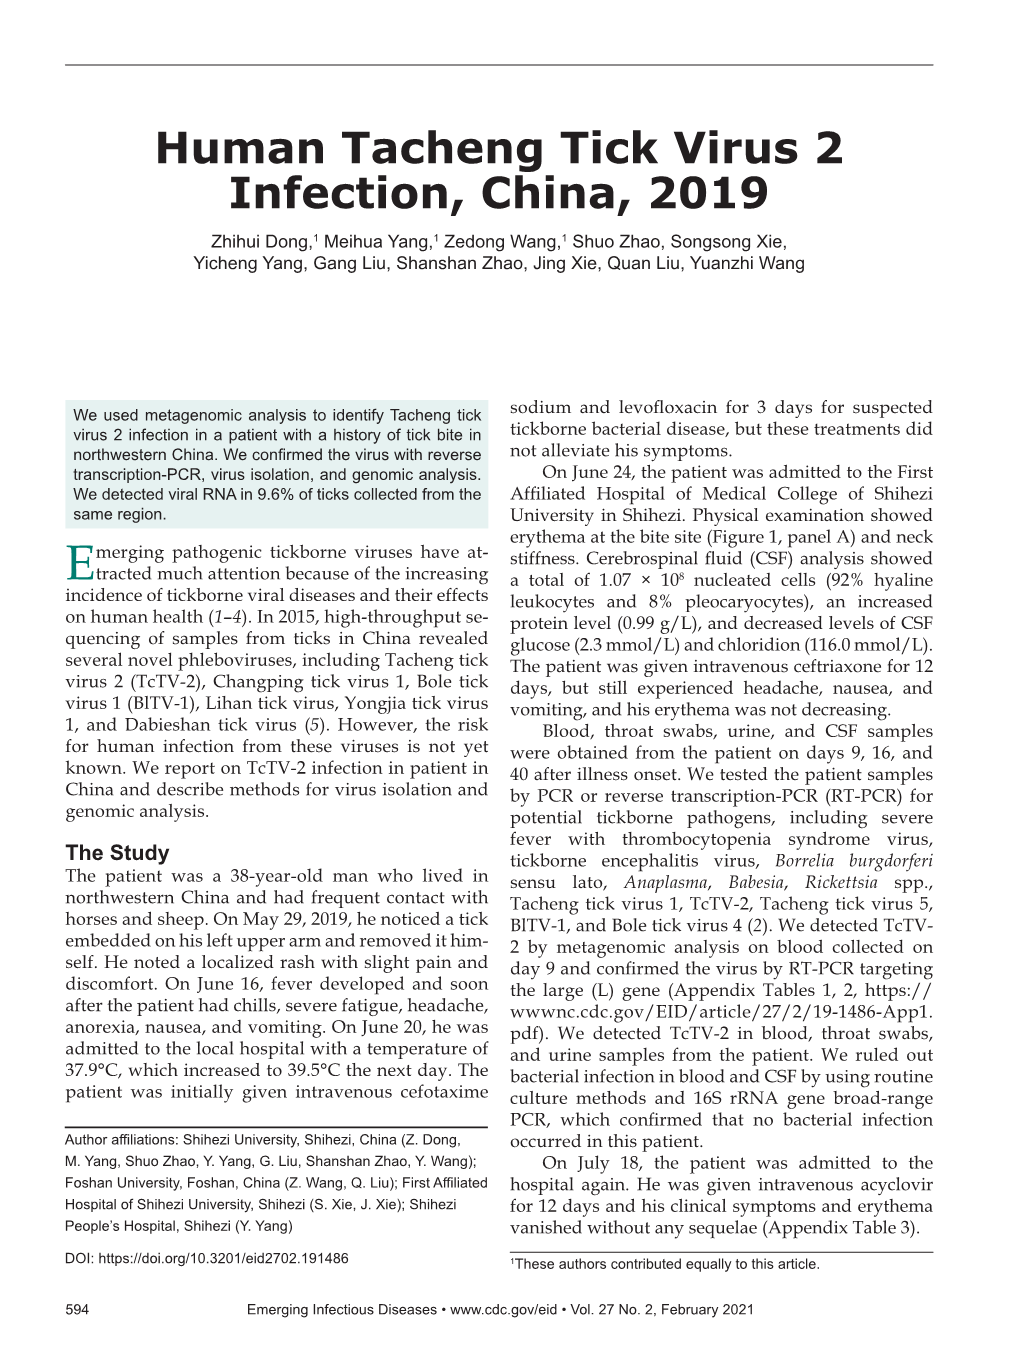 Human Tacheng Tick Virus 2 Infection, China, 2019